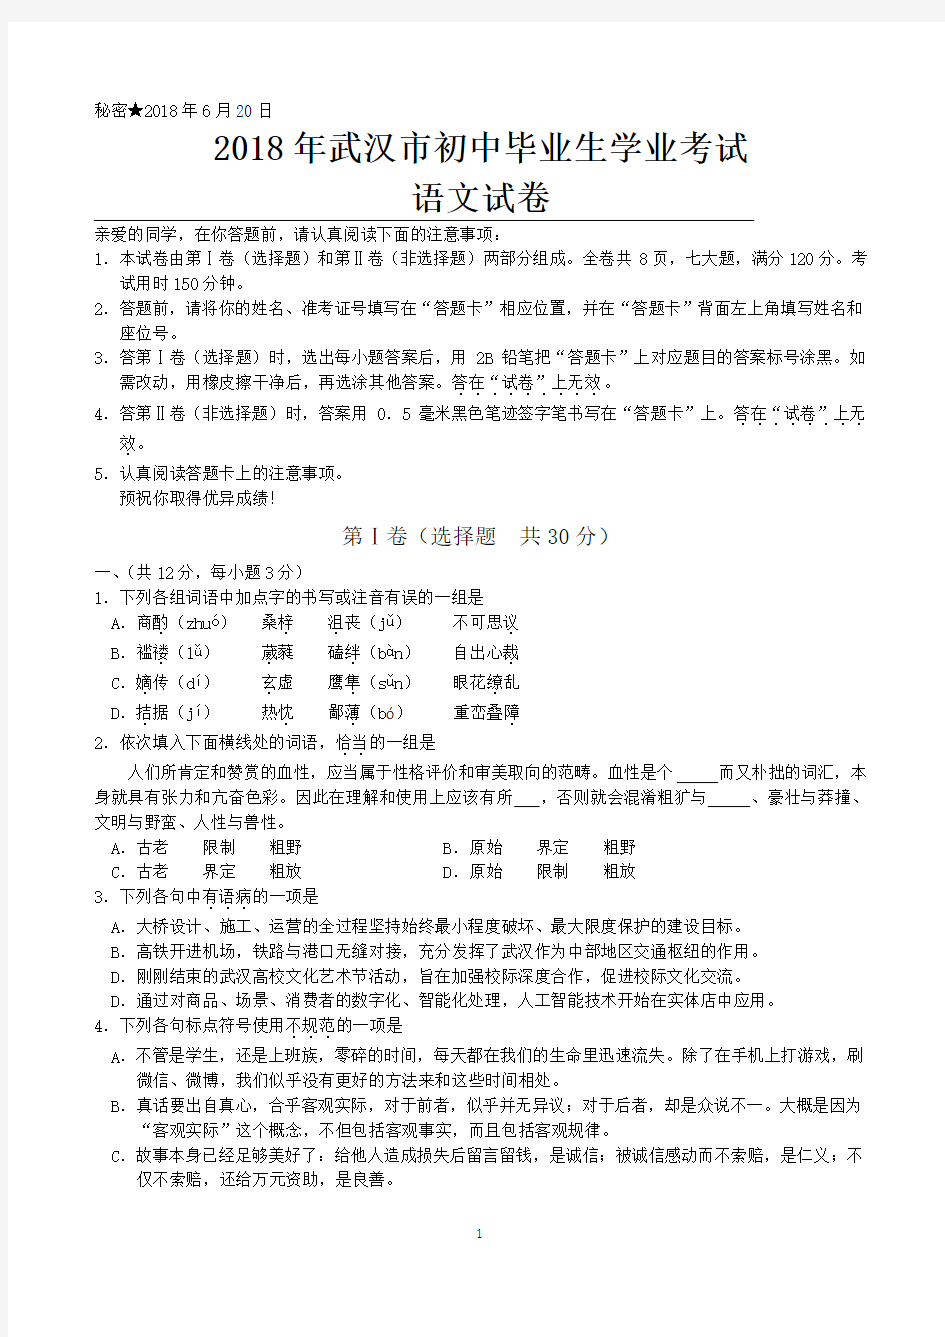 2018年武汉市中考真题(含语文、数学、英语,物理,化学共5科及参考答案)